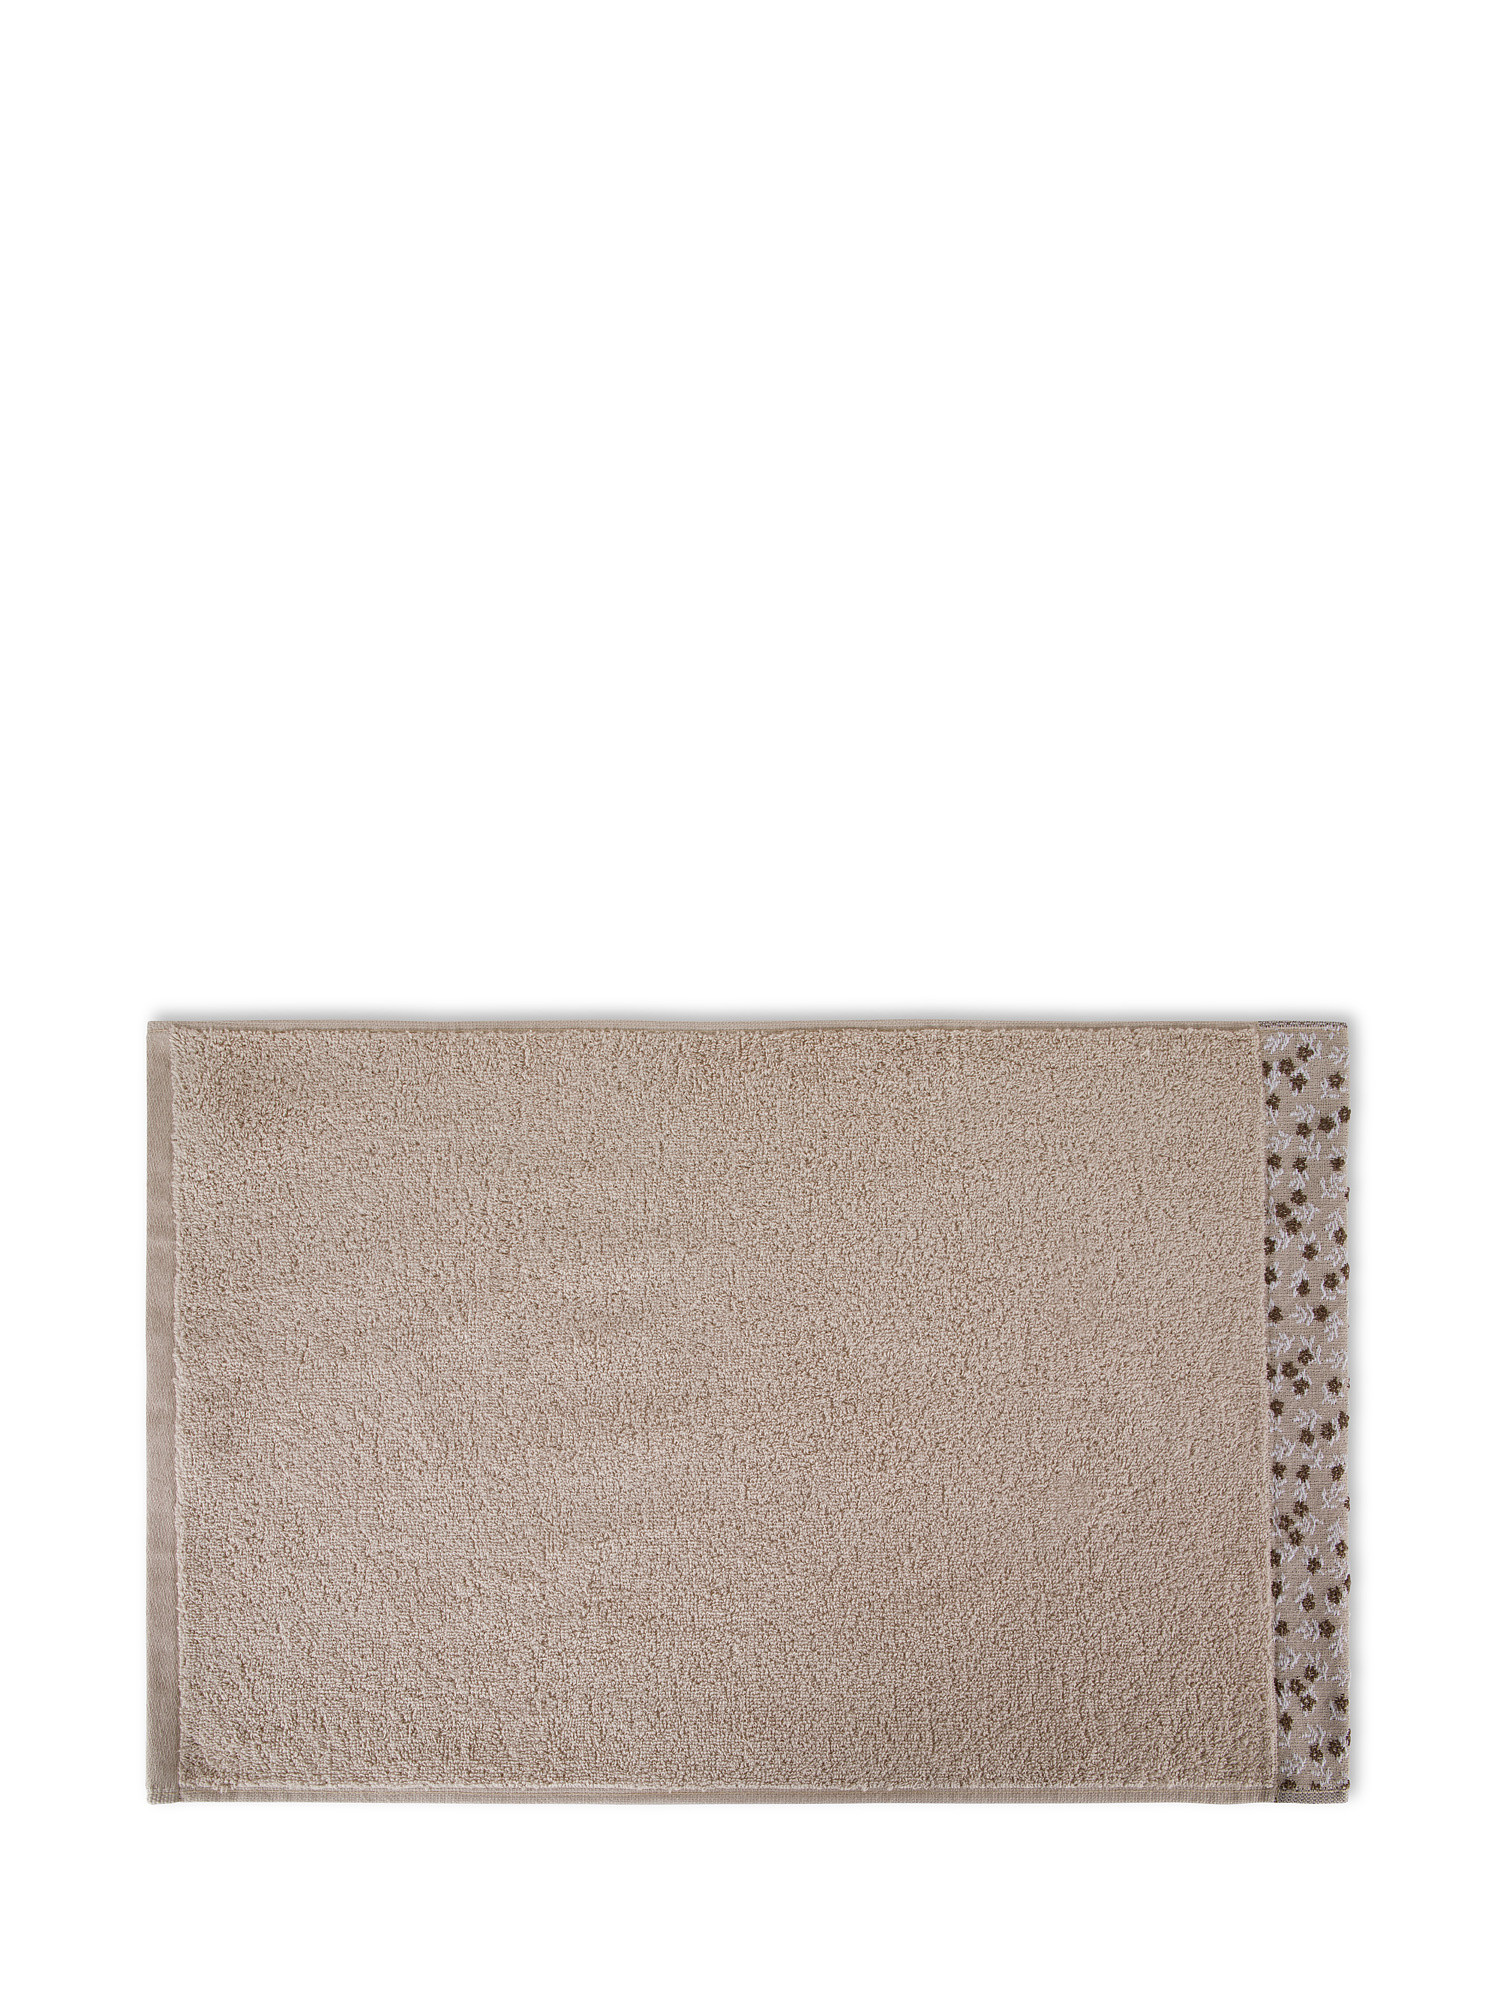 Asciugamano spugna di cotone bordo floreale, Beige, large